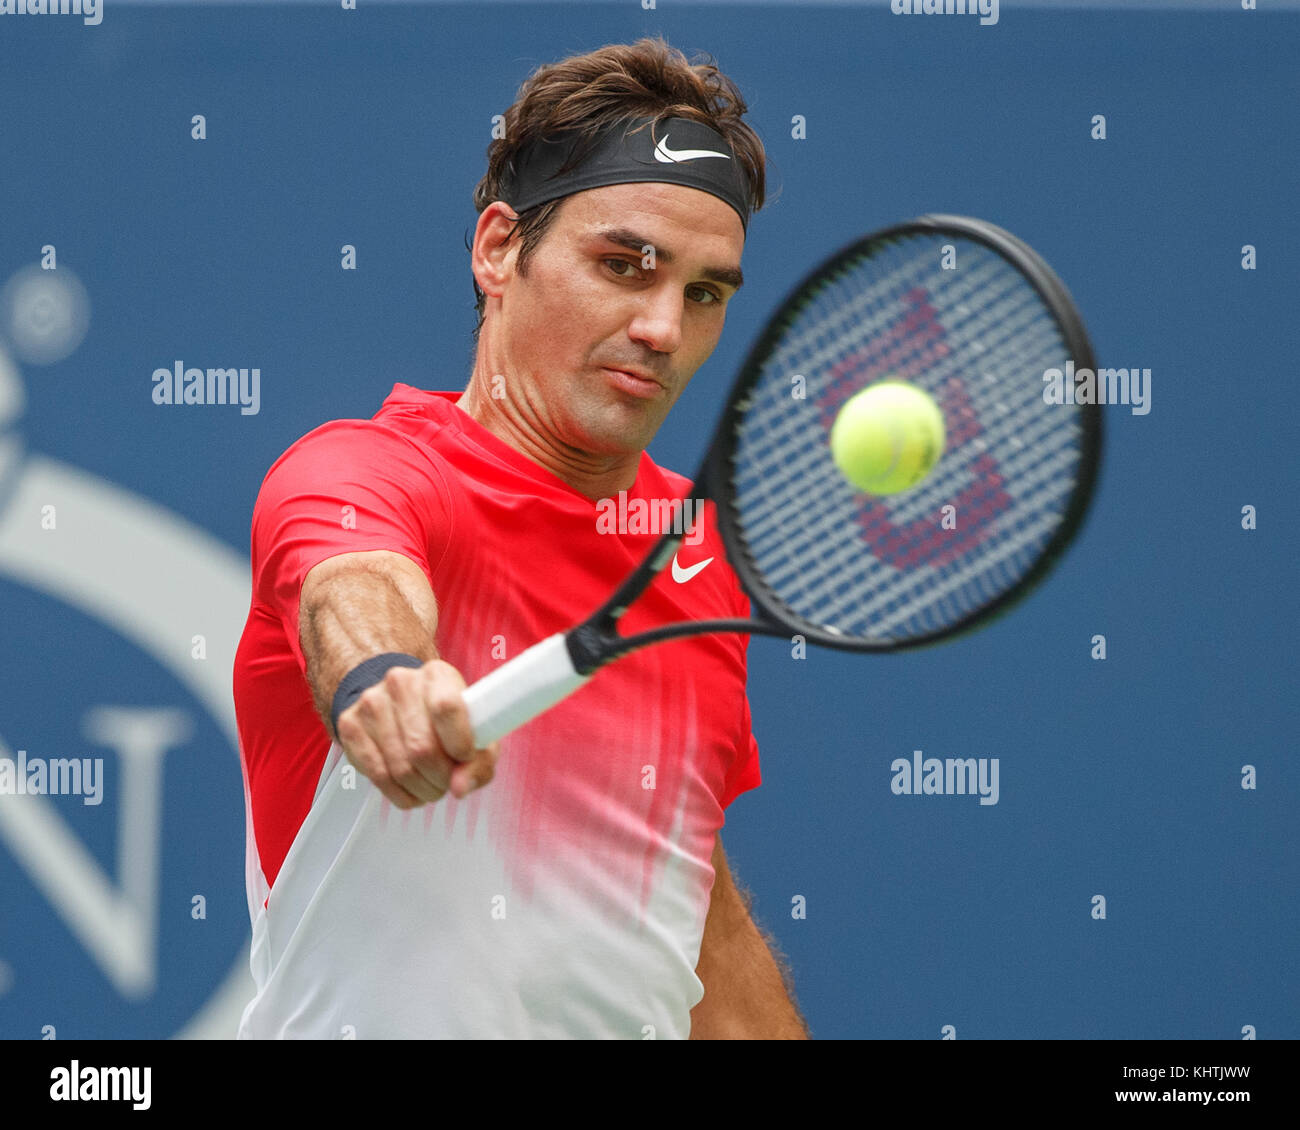 Schweizer Tennisspieler Roger Federer (SUI) spielt Rückhand geschossen während singles Männer gleichen bei US Open 2017 Tennis Meisterschaft, New York City, New York st Stockfoto